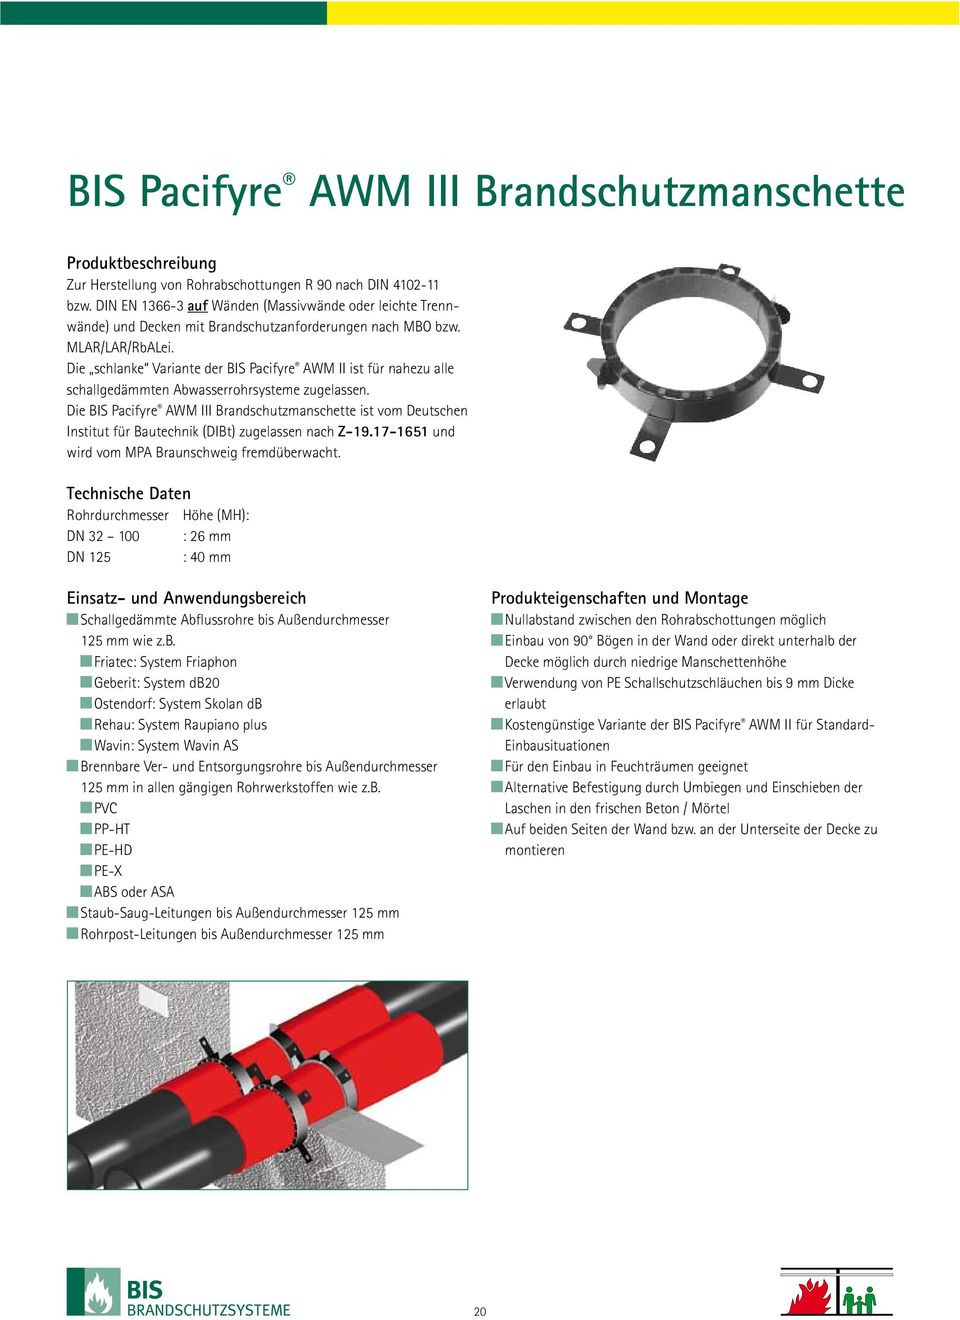 Die schlanke Variante der BIS Pacifyre AWM II ist für nahezu alle schallgedämmten Abwasserrohrsysteme zugelassen.